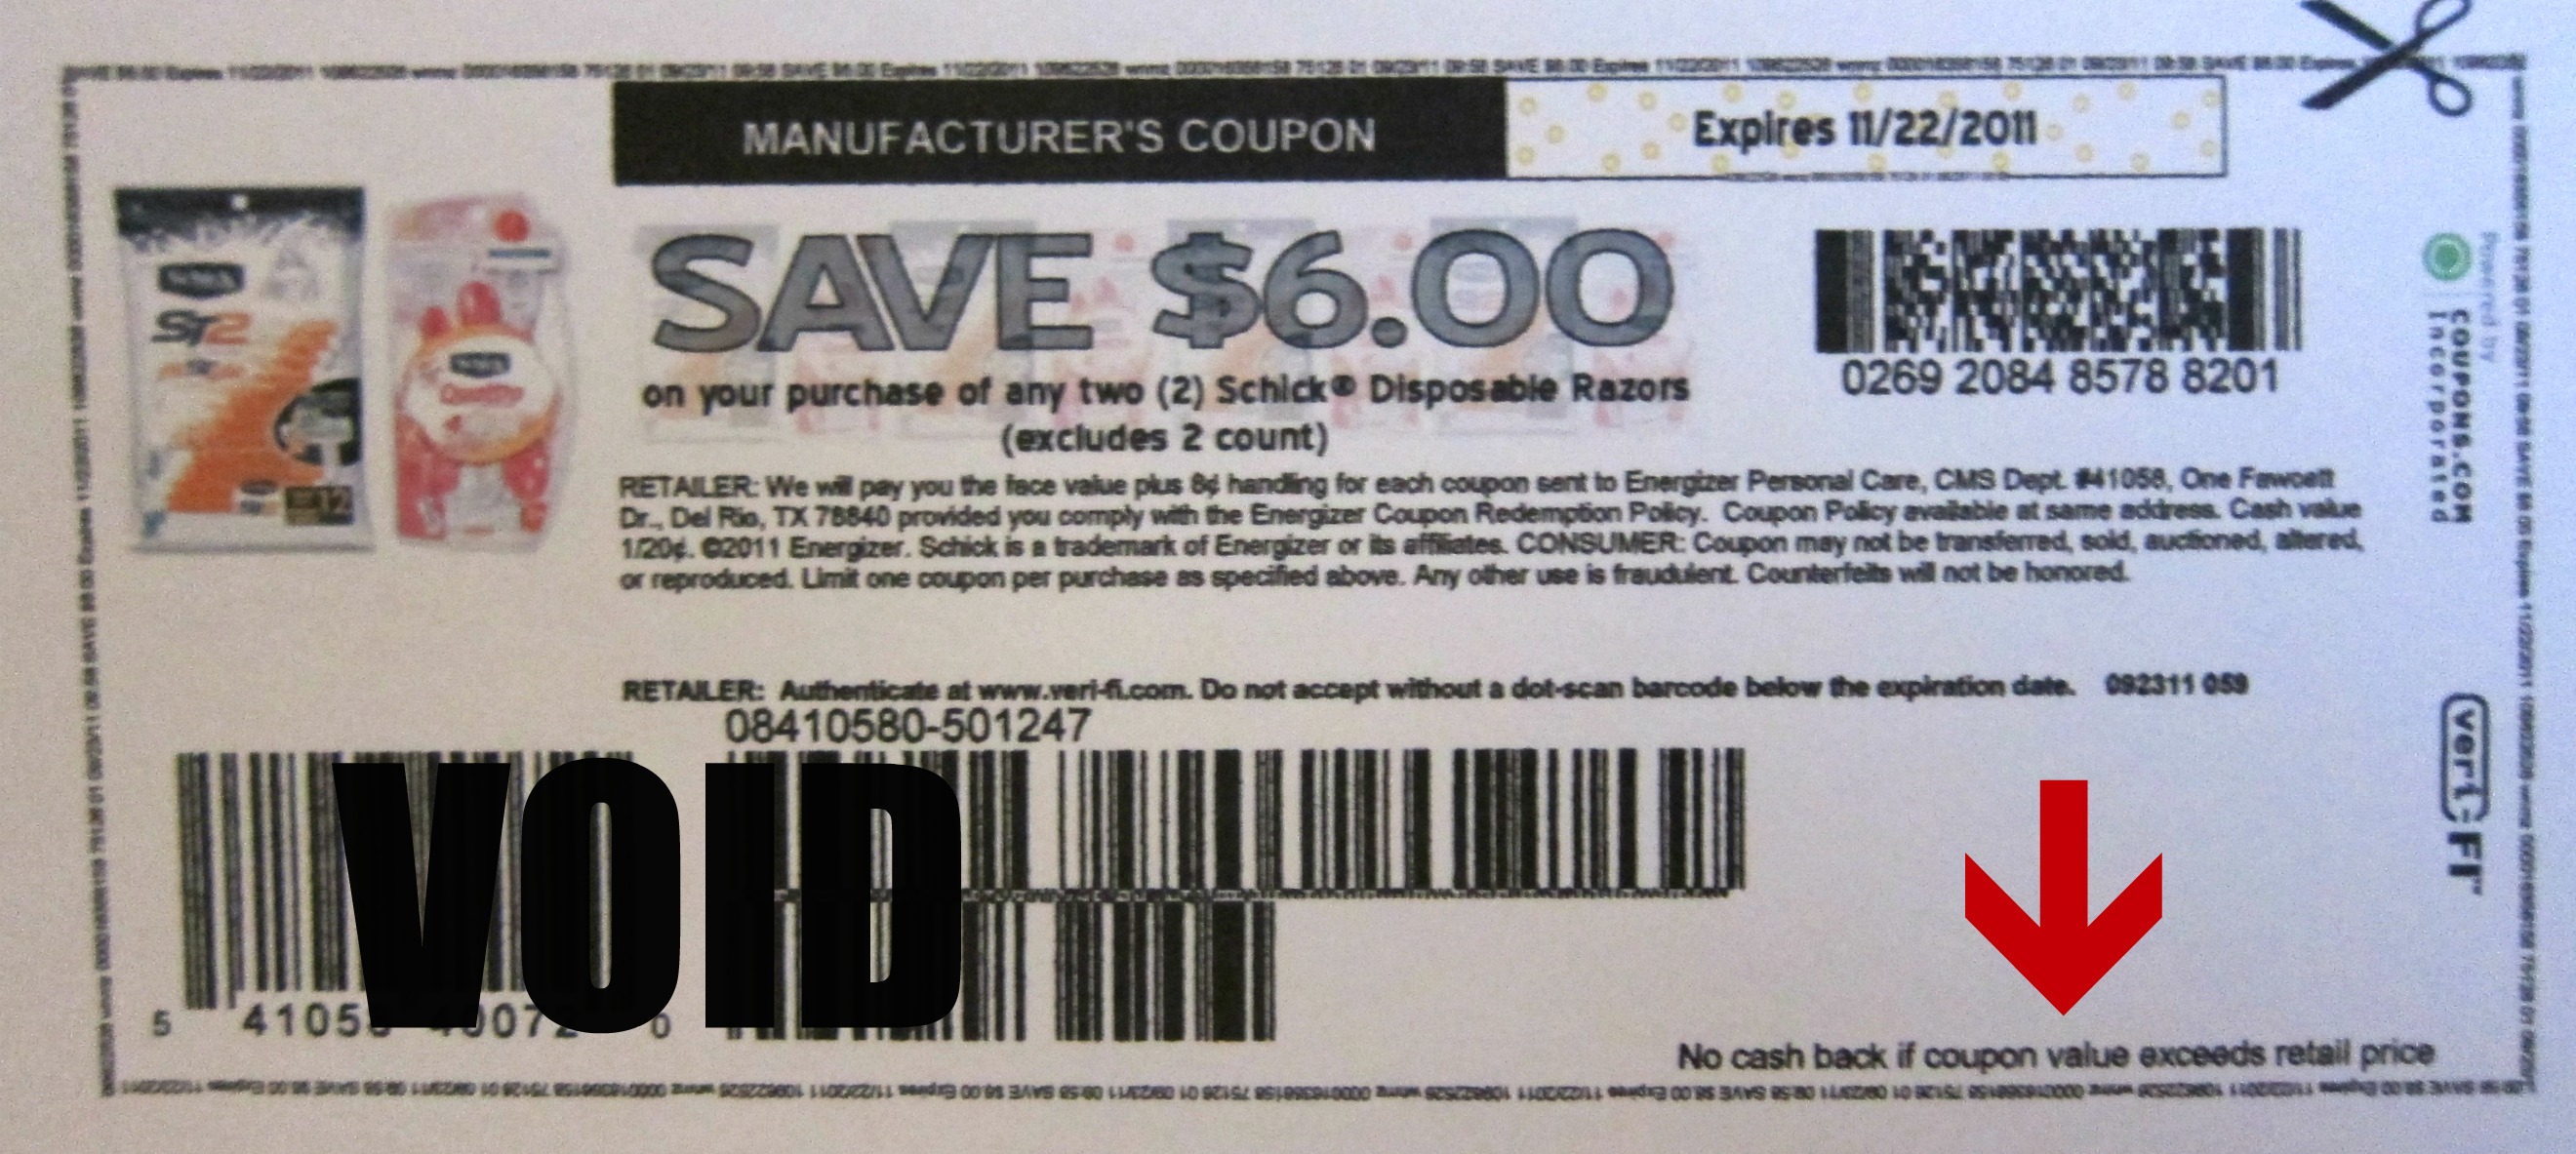 textexpander coupon 2014